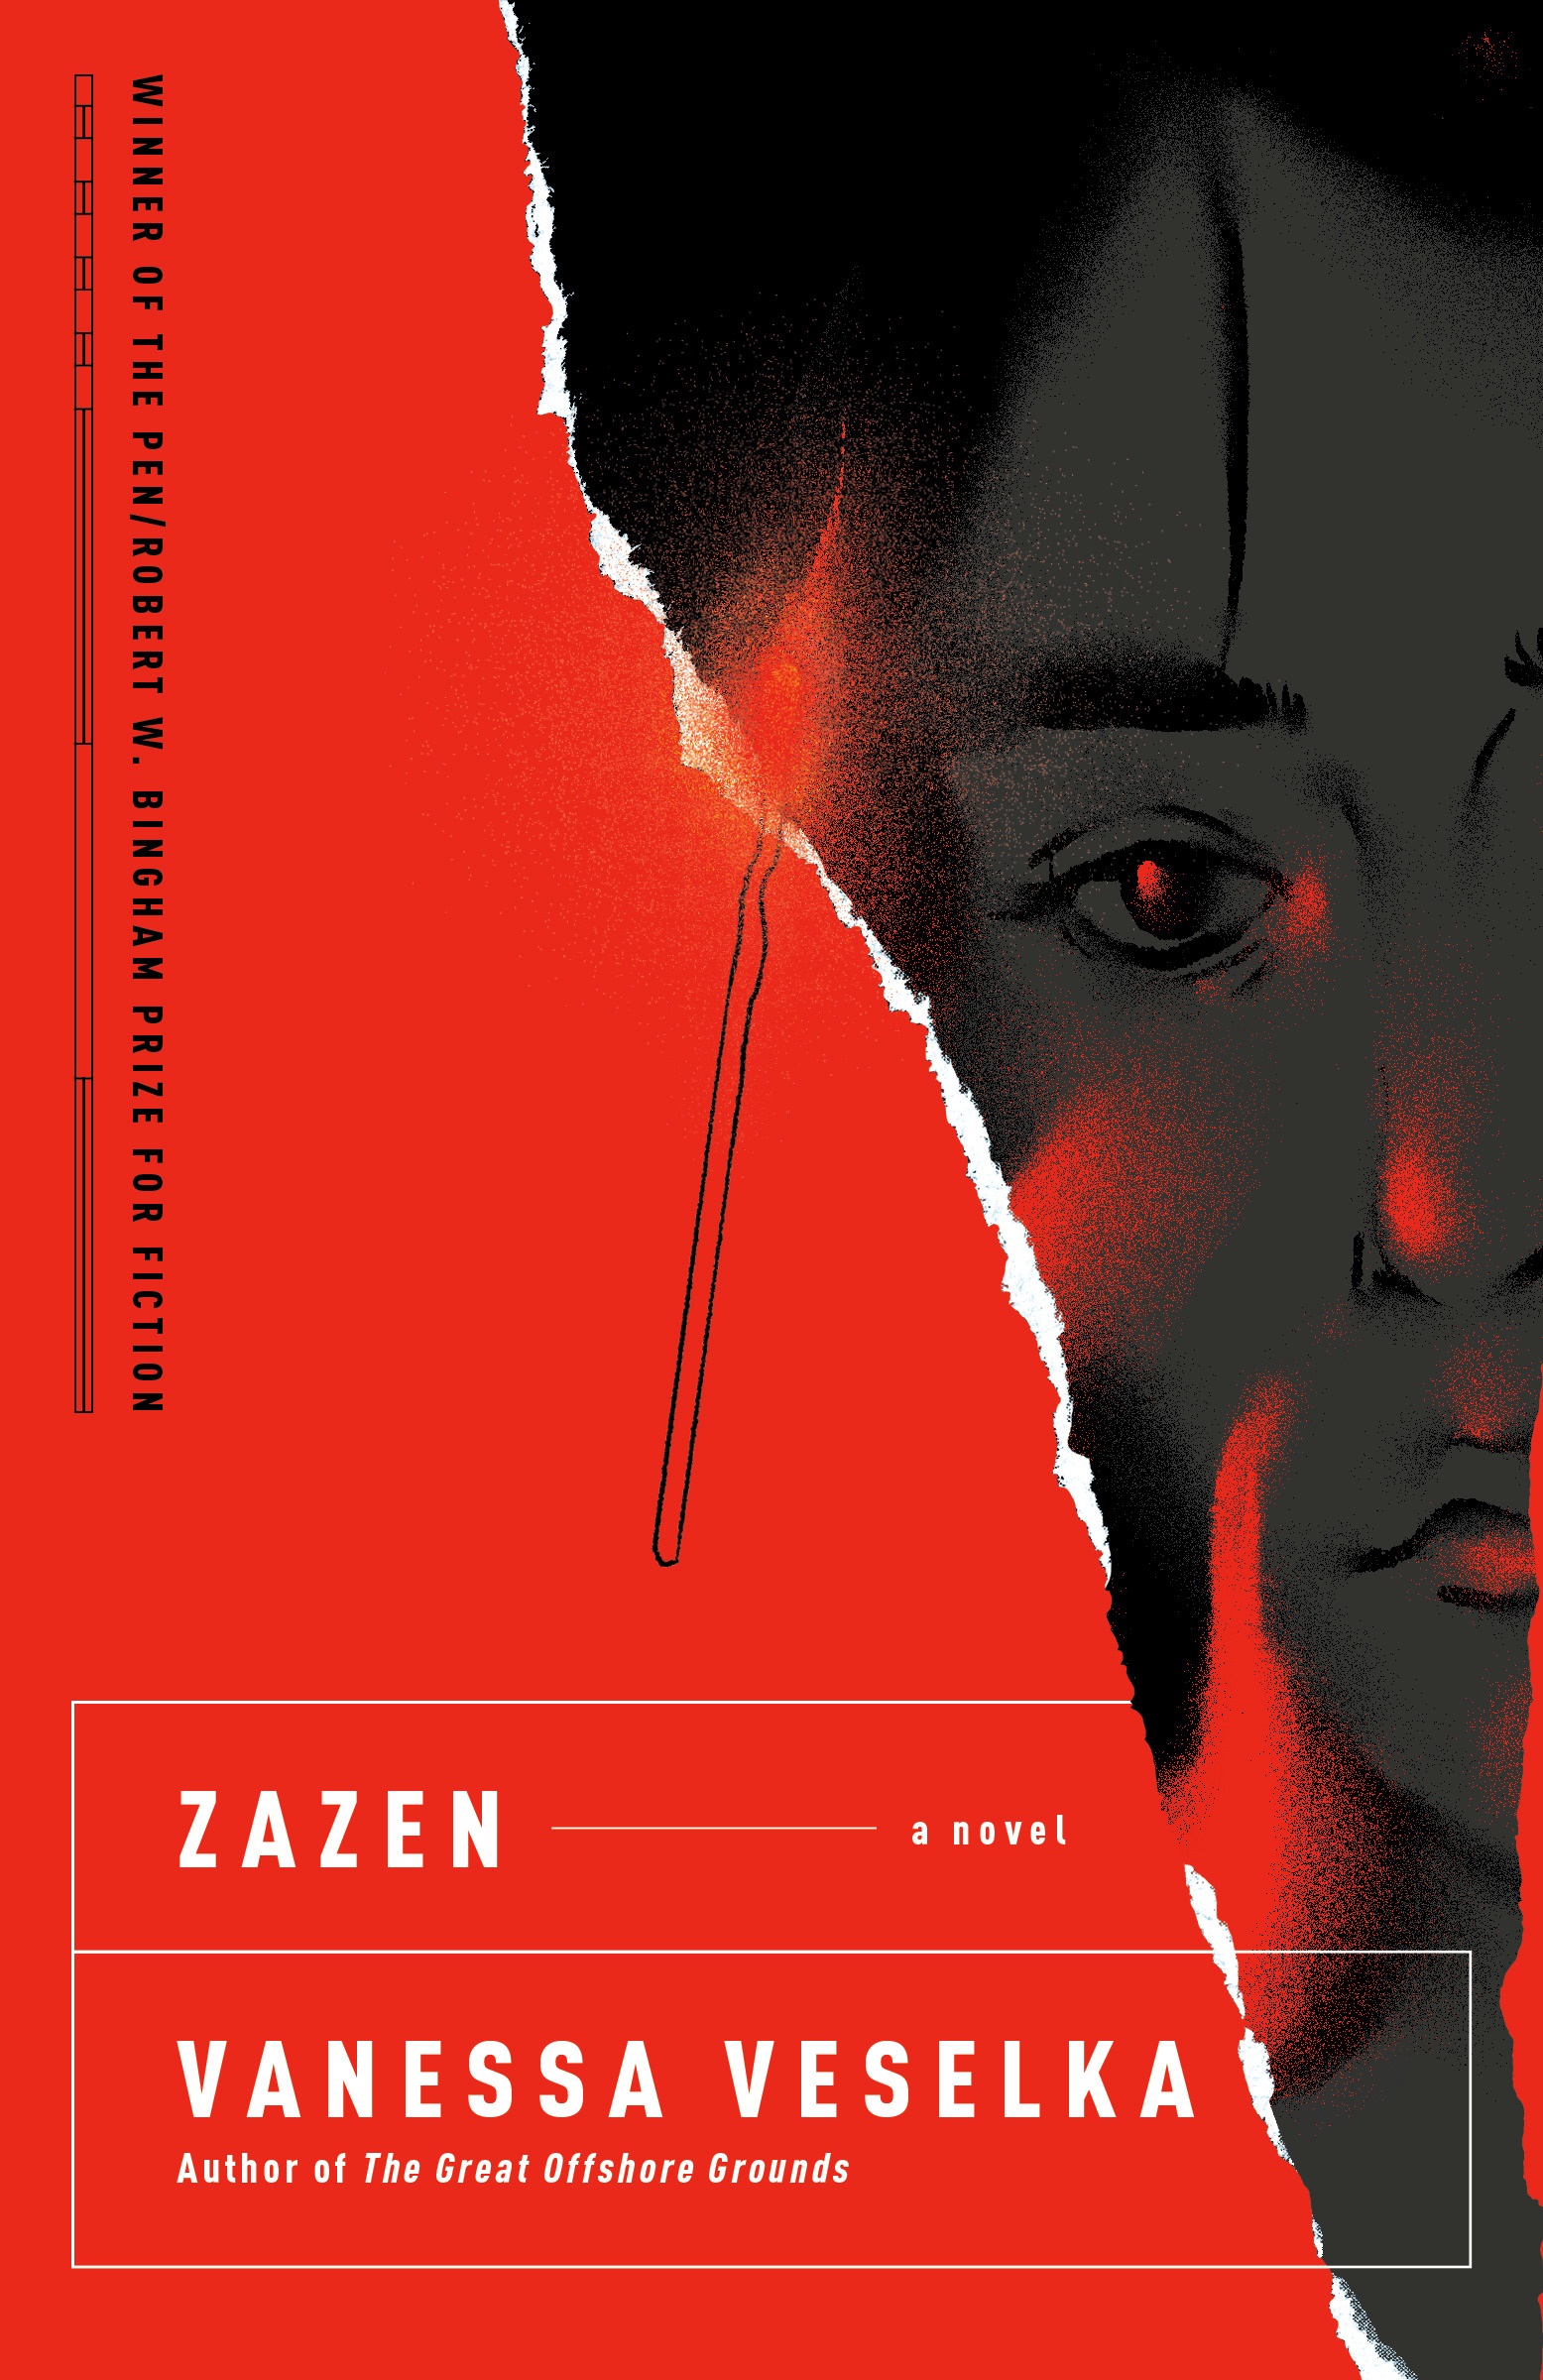 Book Launch: ZAZEN by Vanessa Veselka in conversation with David Ouimet